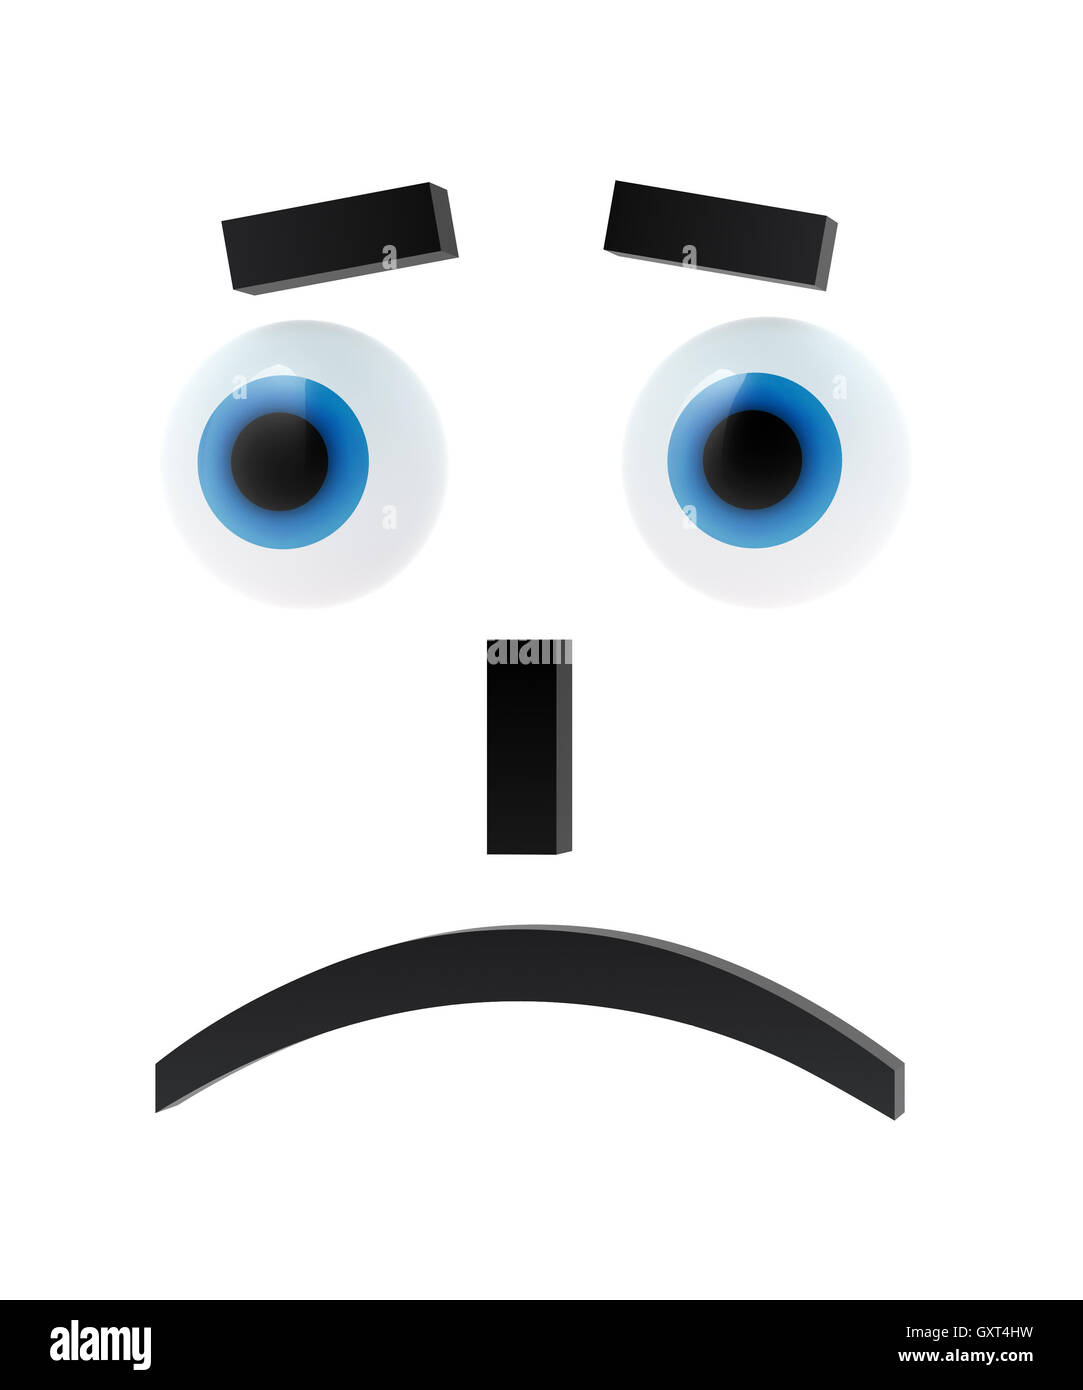 Sad emoticon with blue eyes Stock Photo